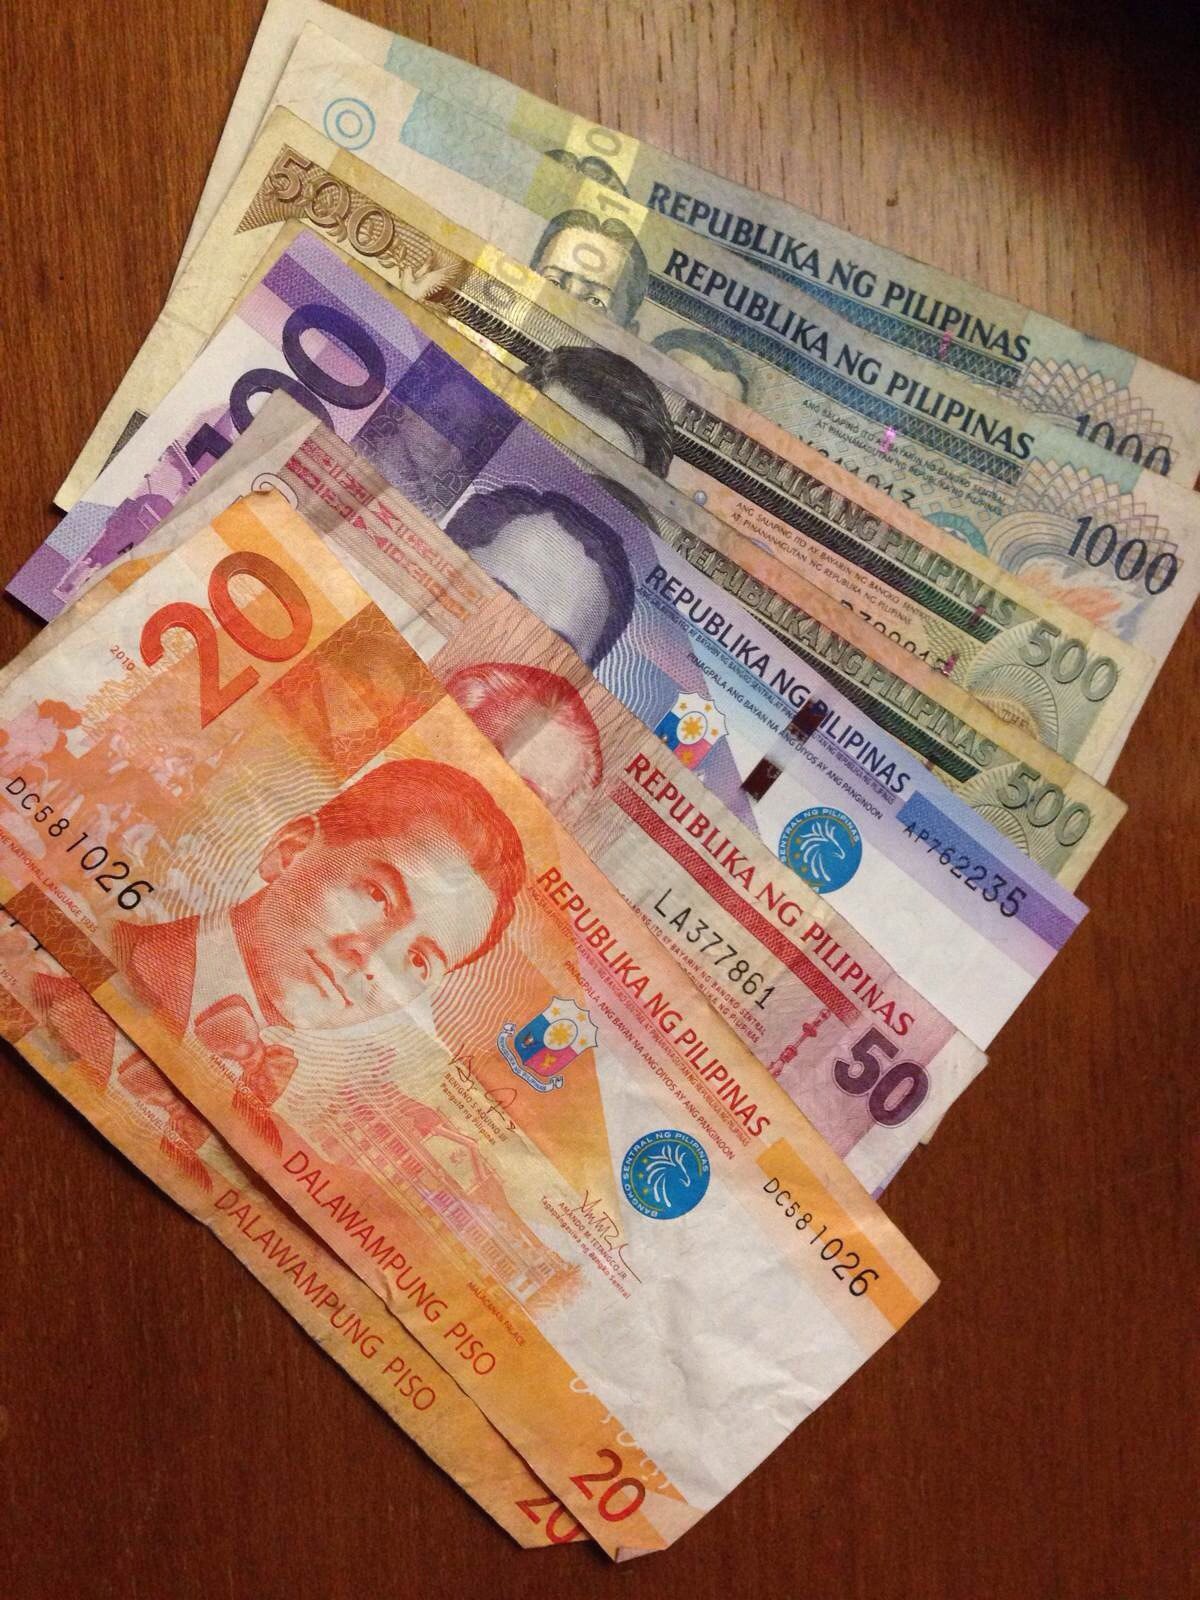 长滩岛的货币是菲律宾比索(peso),1等于6p左右.2.